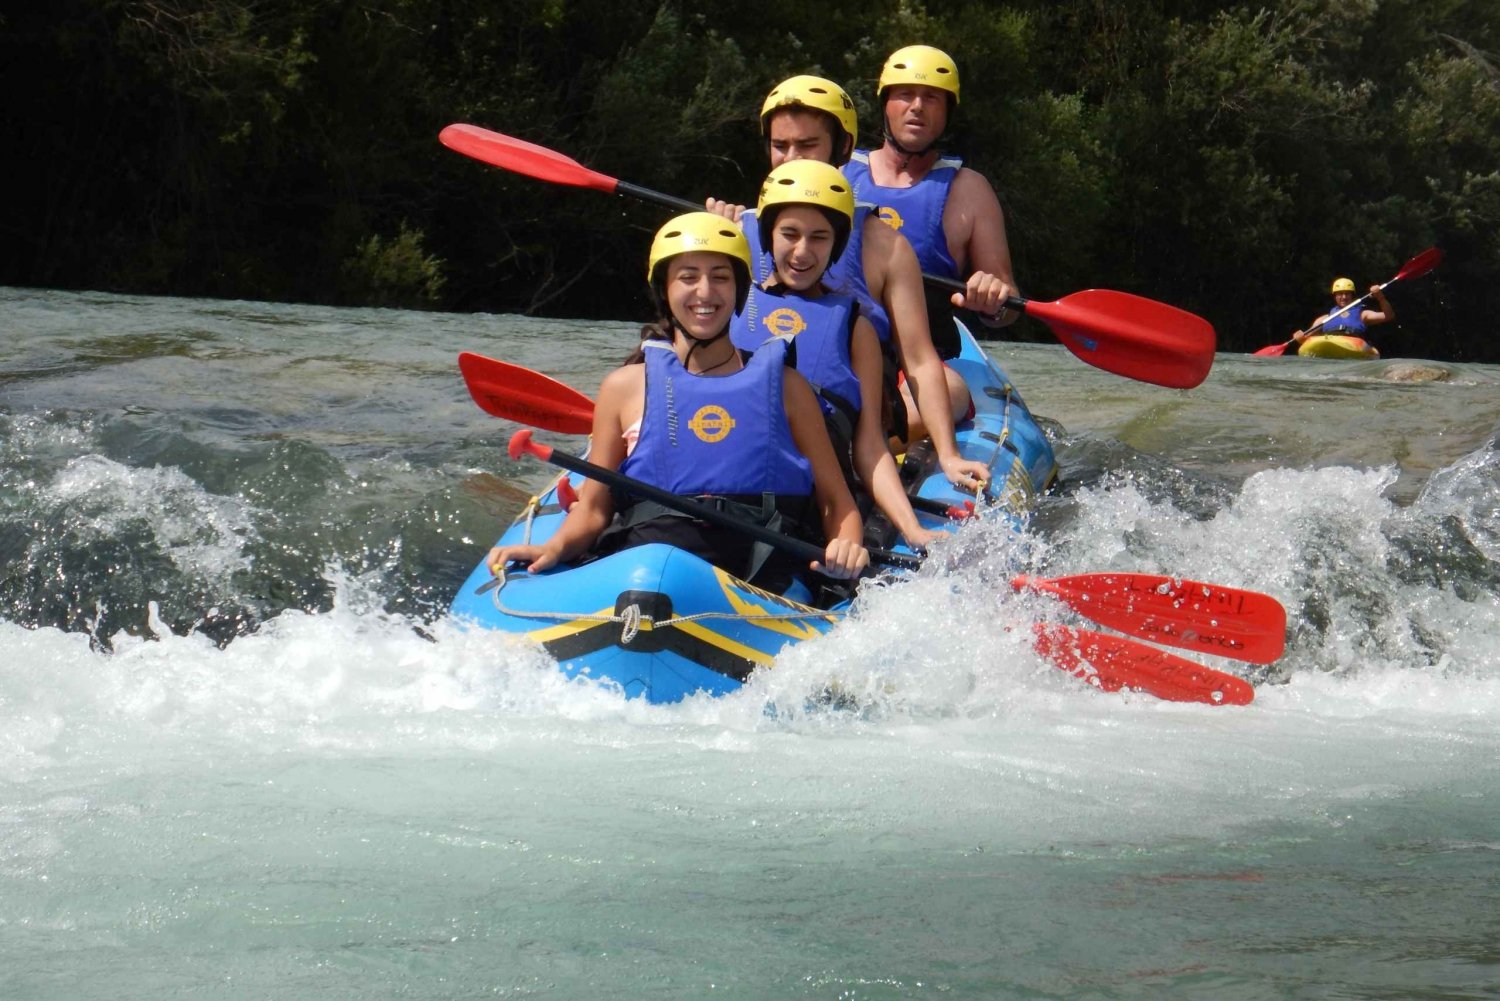 Radovljica: Raftingtur på floden Sava med Mini Raft